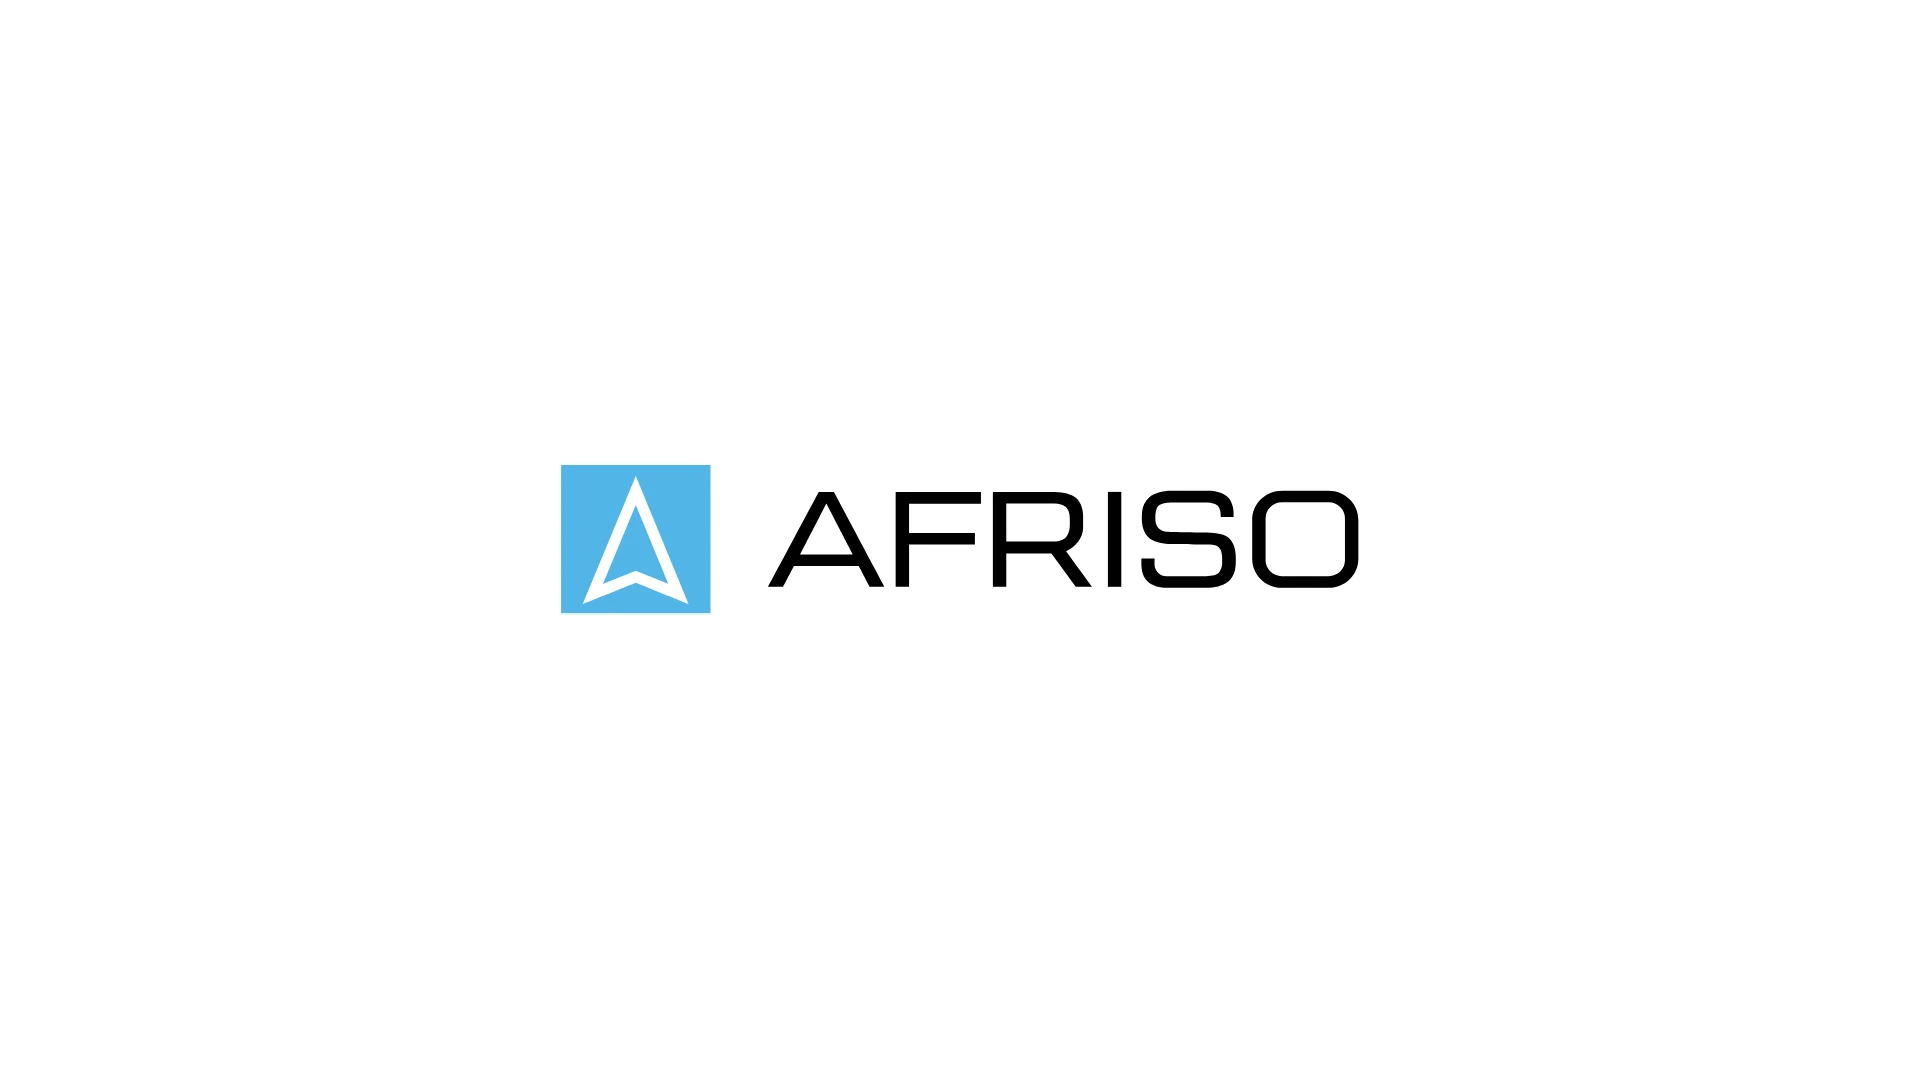 AFRISO marką pierwszego wyboru